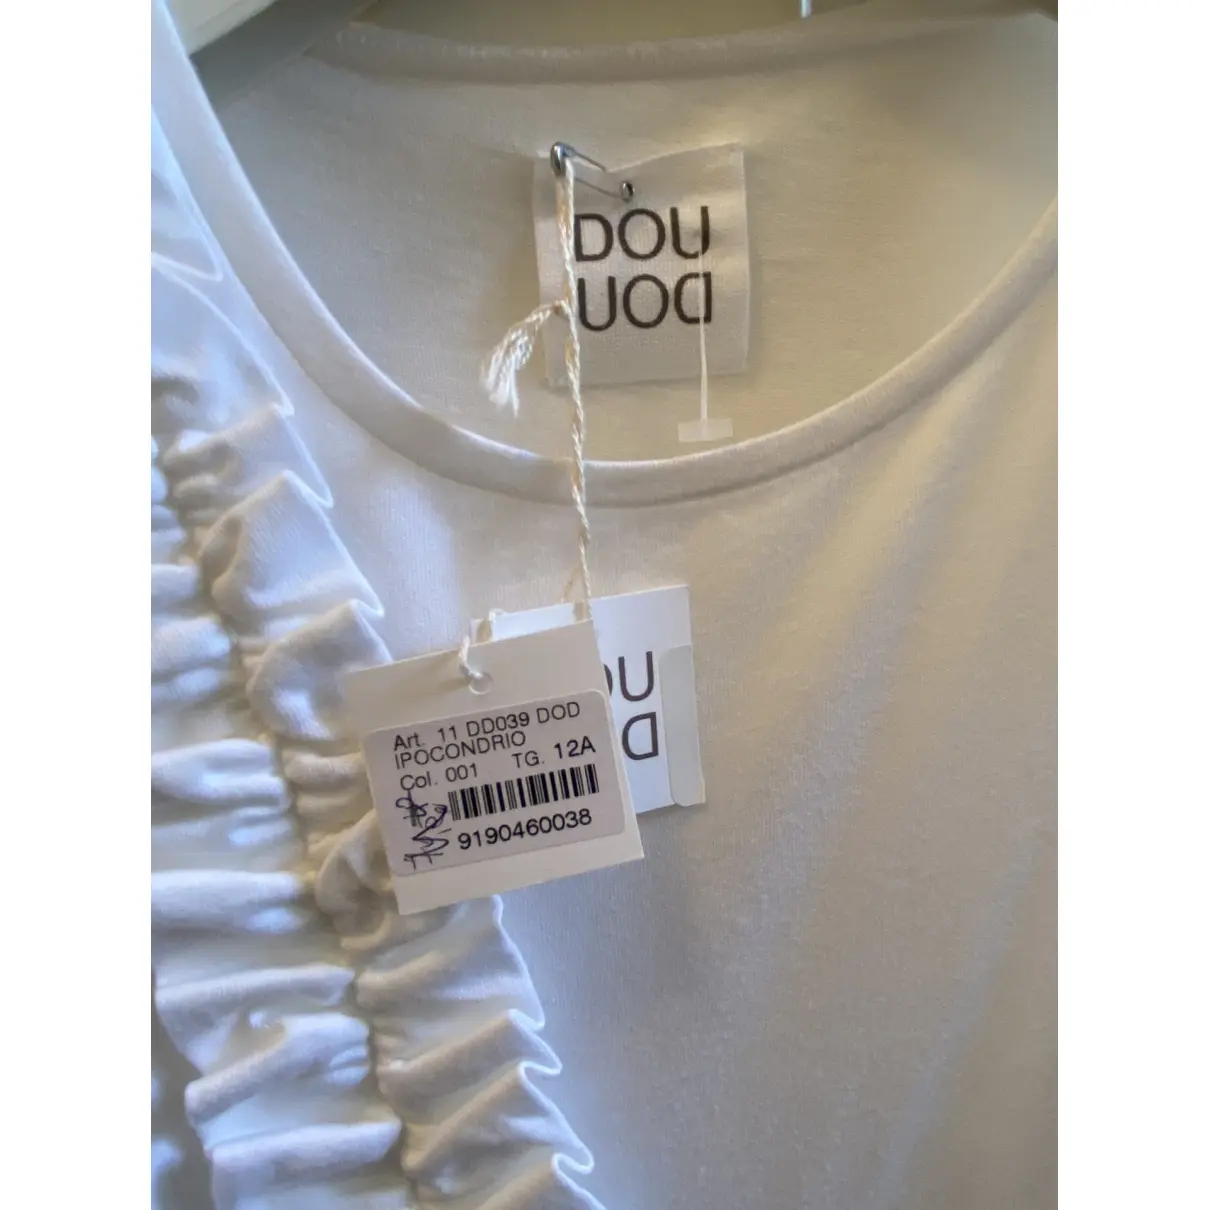 Buy Douuod Dress online